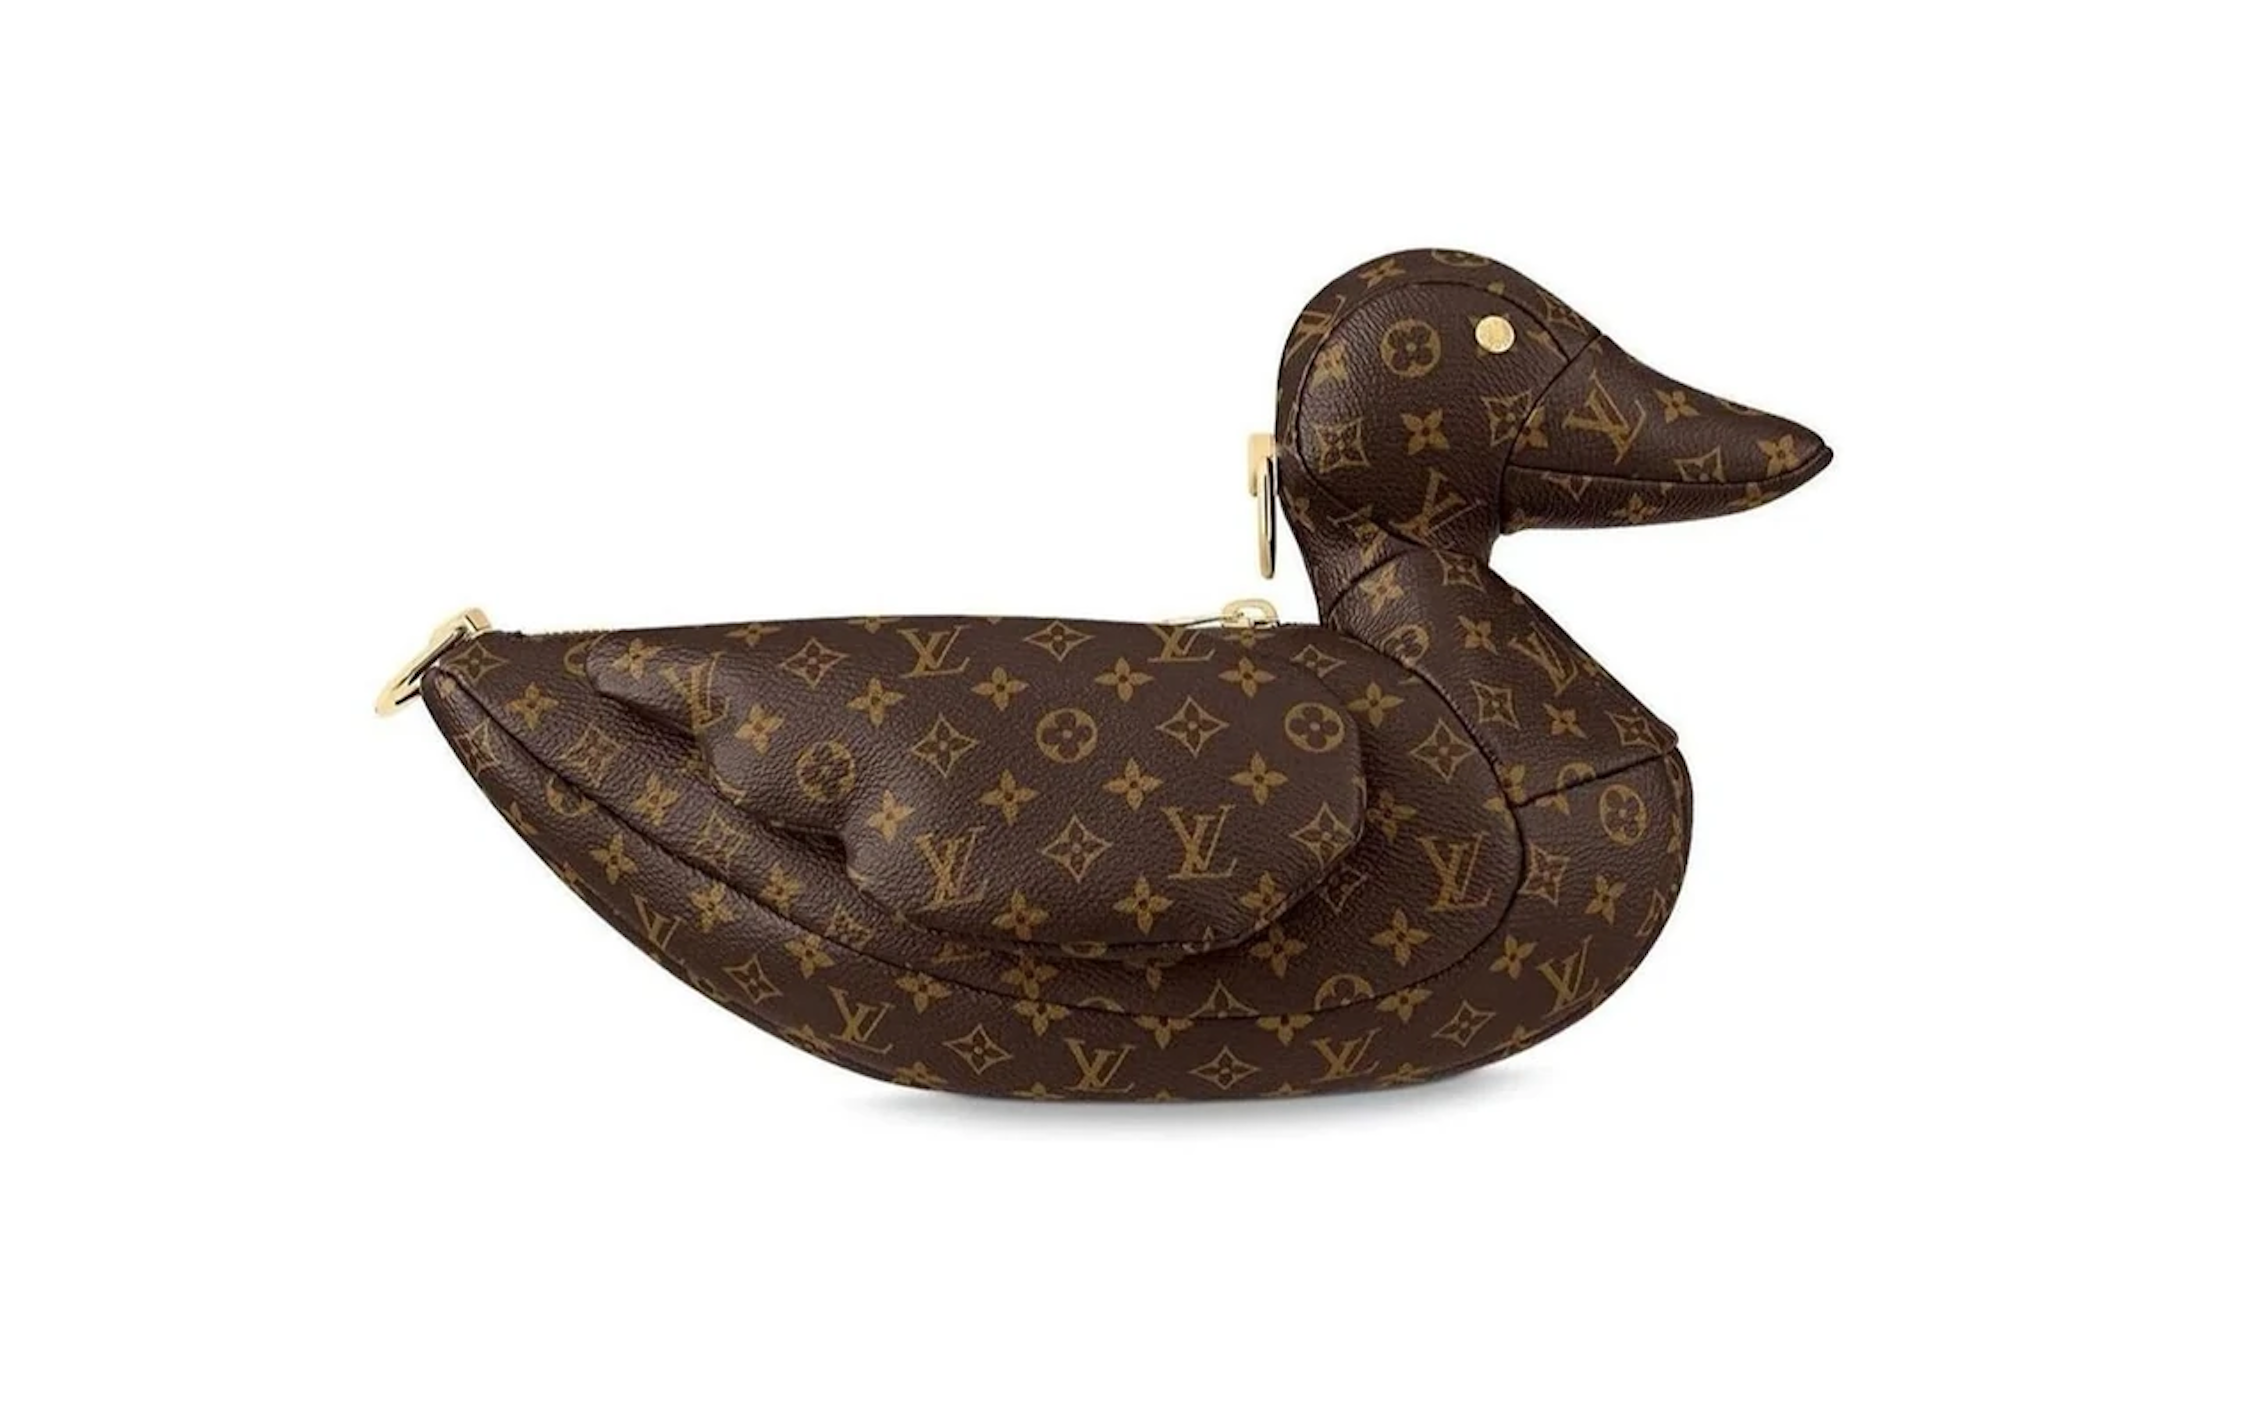 Louis Vuitton x Nigo Limited Edition Duck Figurine